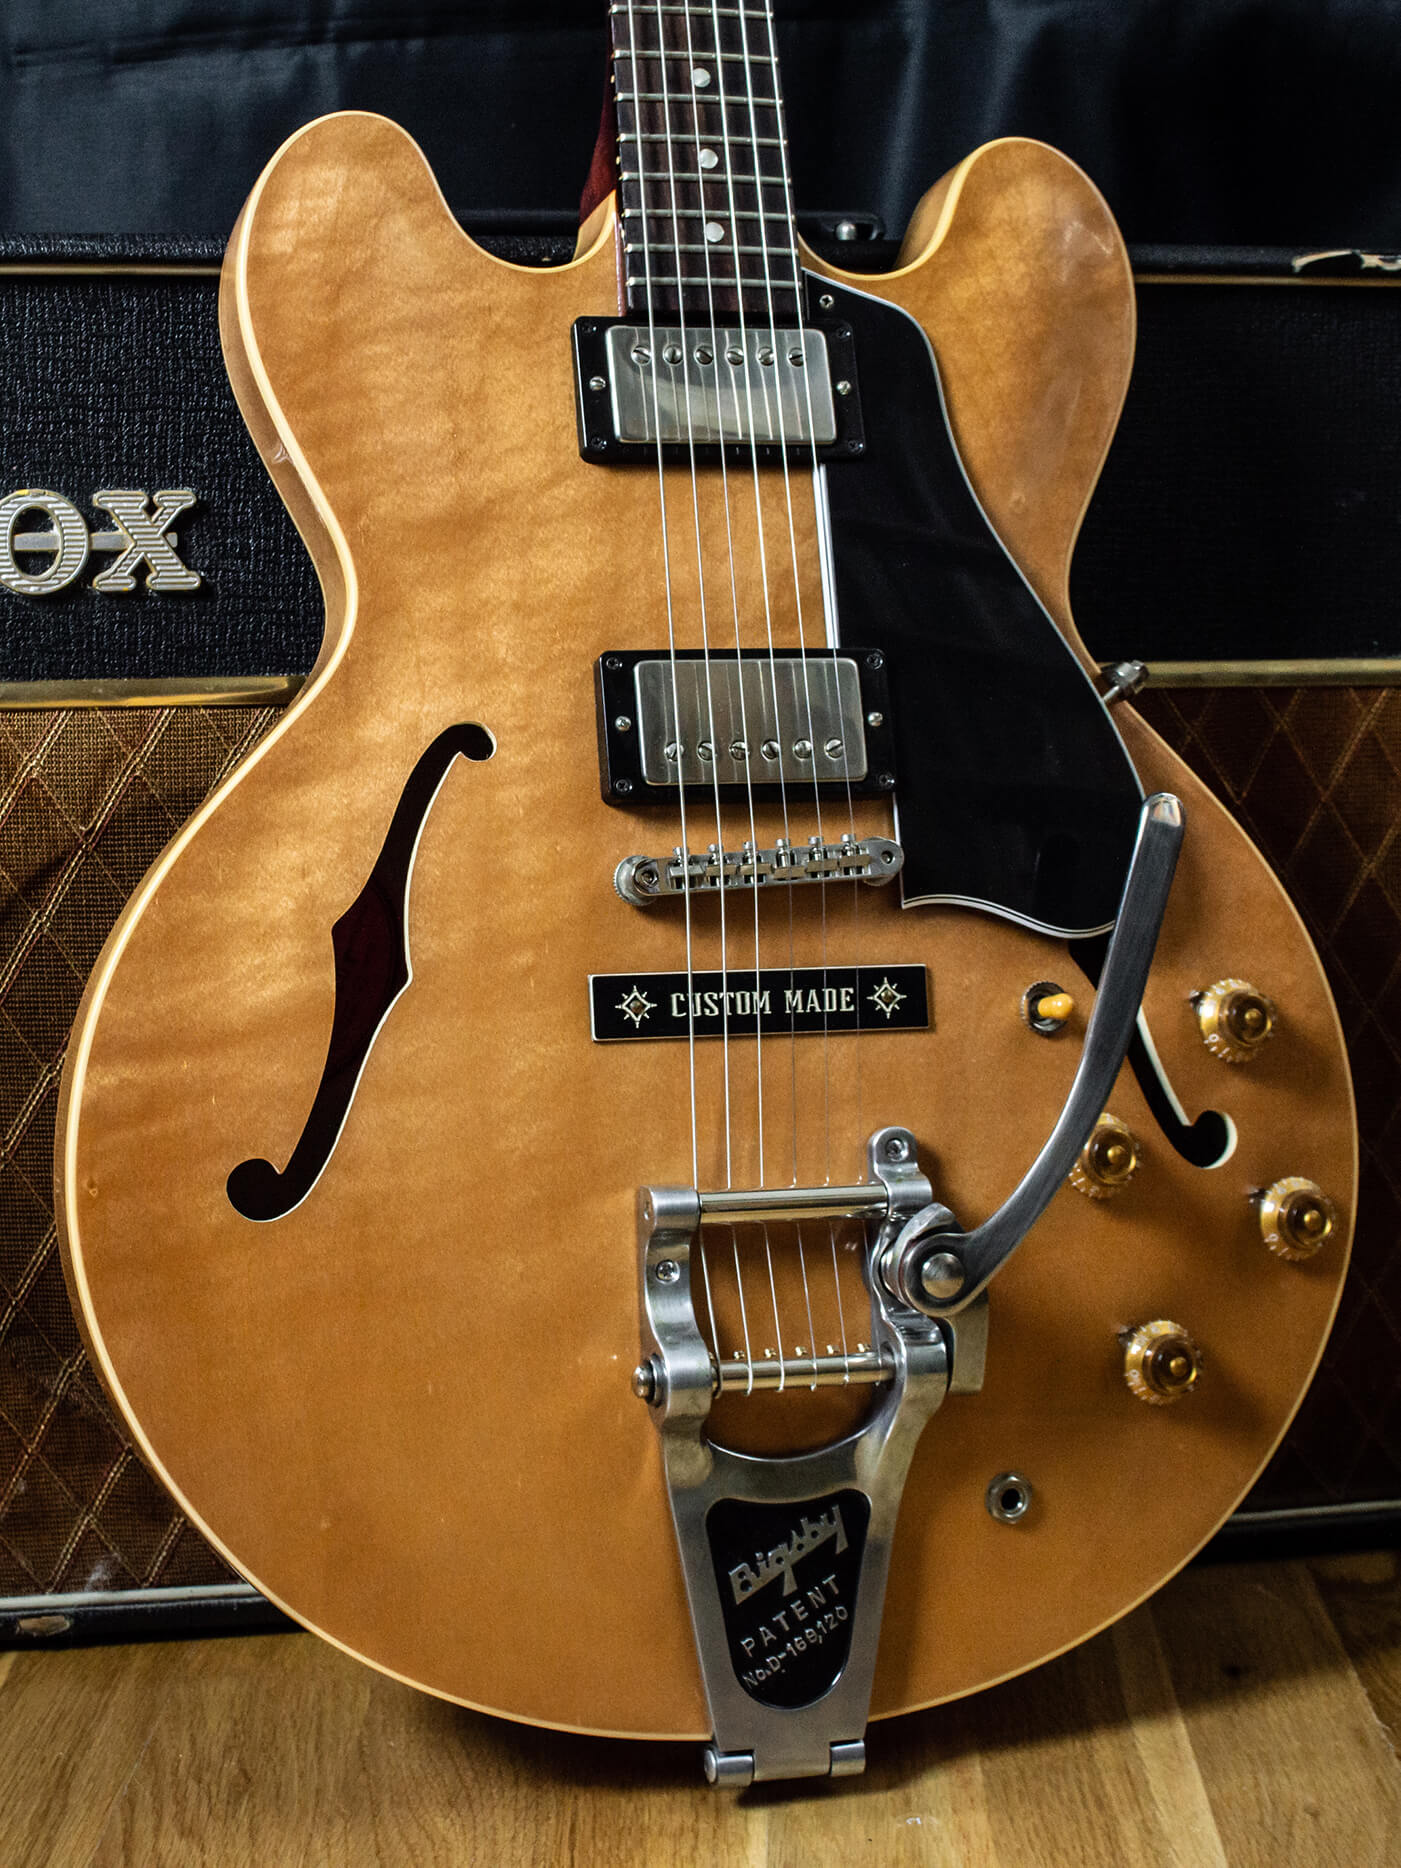 Aged Bigsby B7 Vibrato Tremolo Relic Gibson Les Paul, ES-335